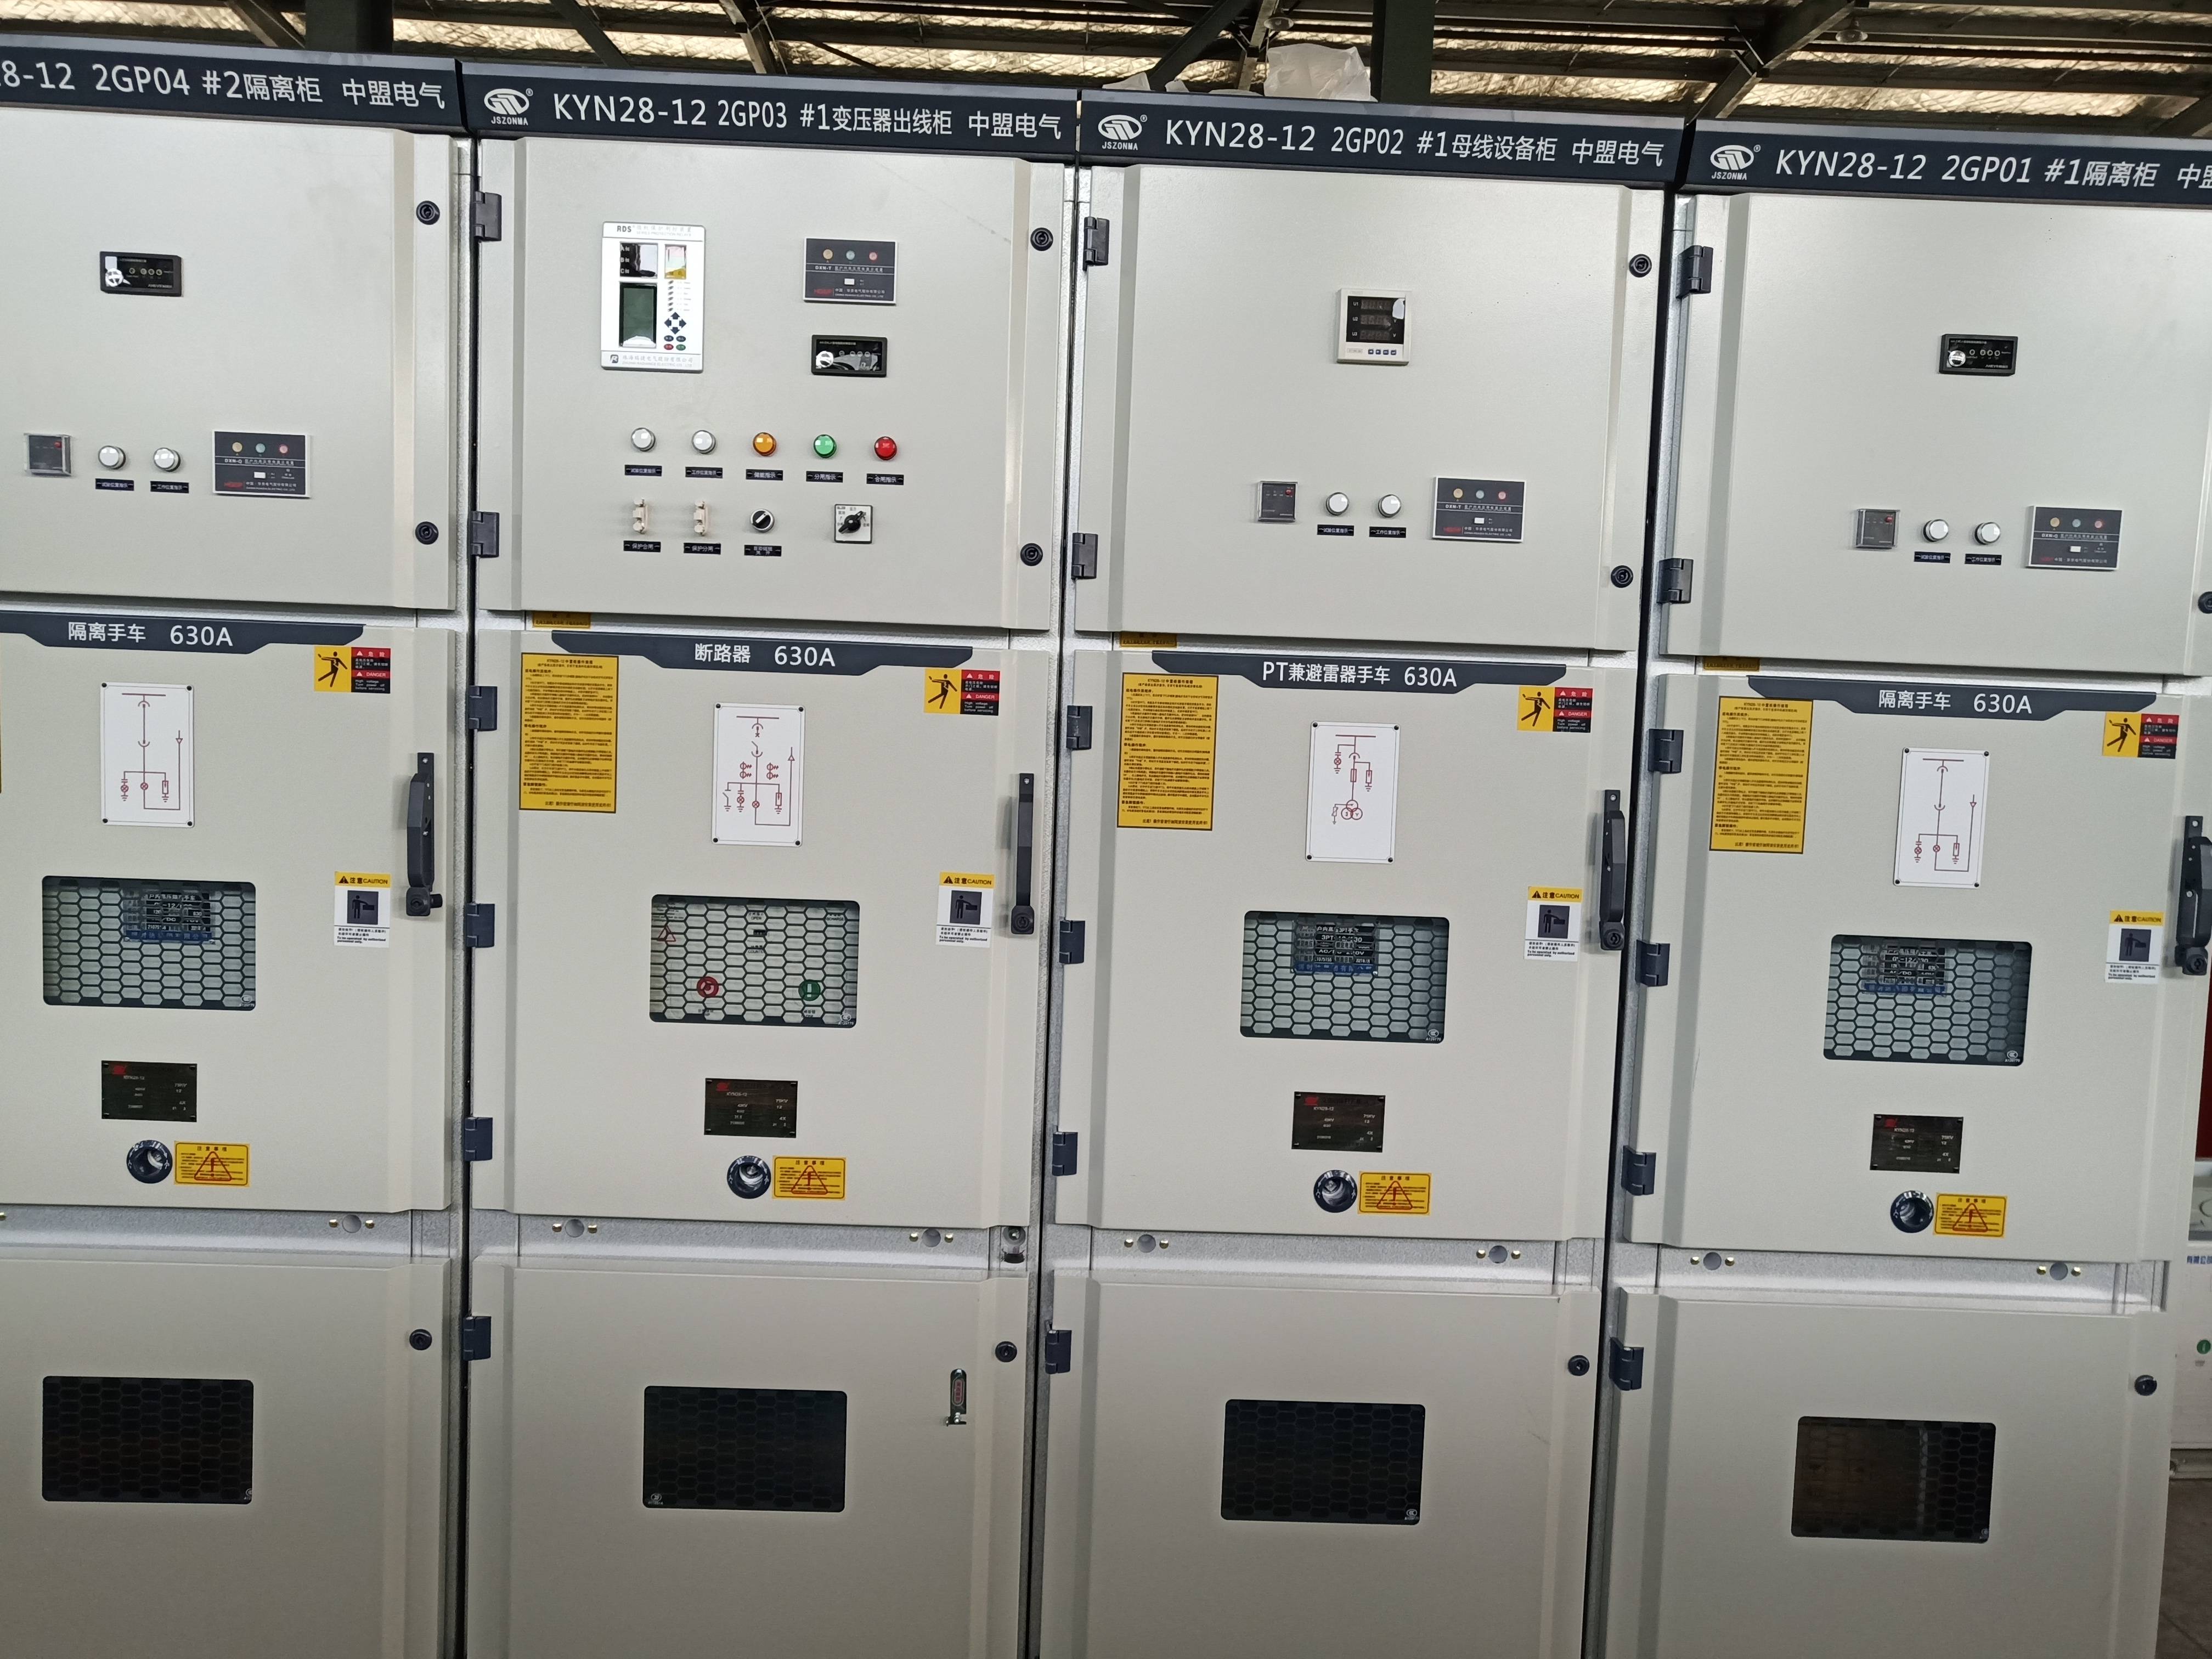 电气设备之kyn28a12高压开关柜来自高低压开关柜成套厂家